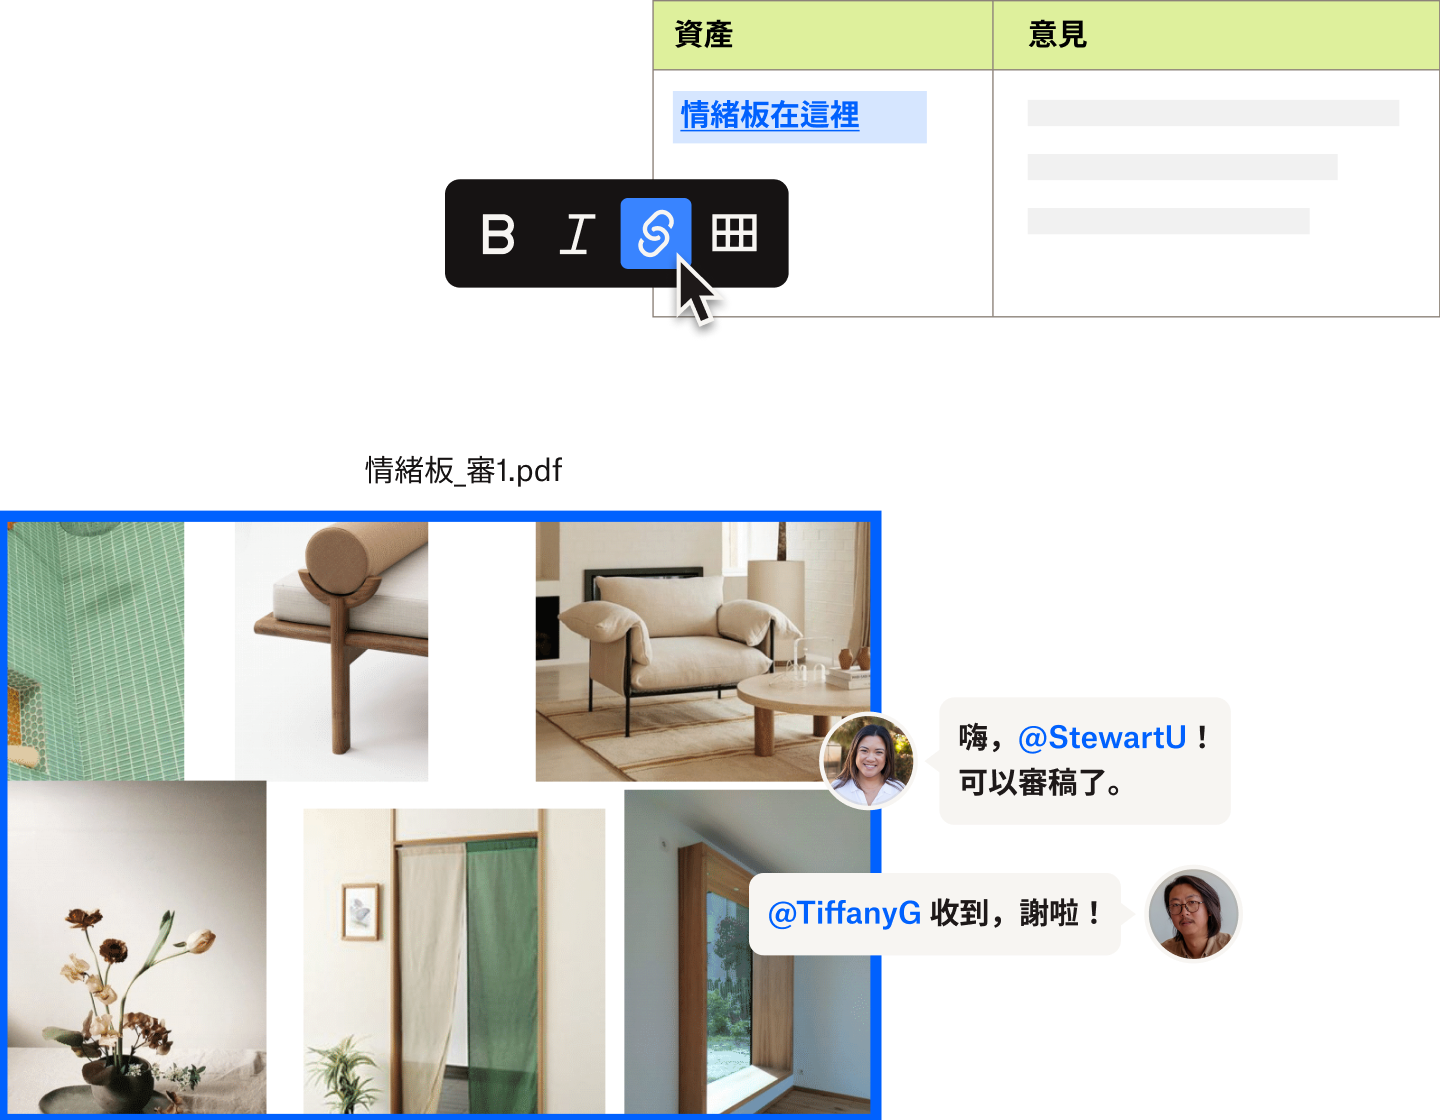 兩位使用者運用 Dropbox Paper，在重新設計家居空間所用的情緒板上留言。